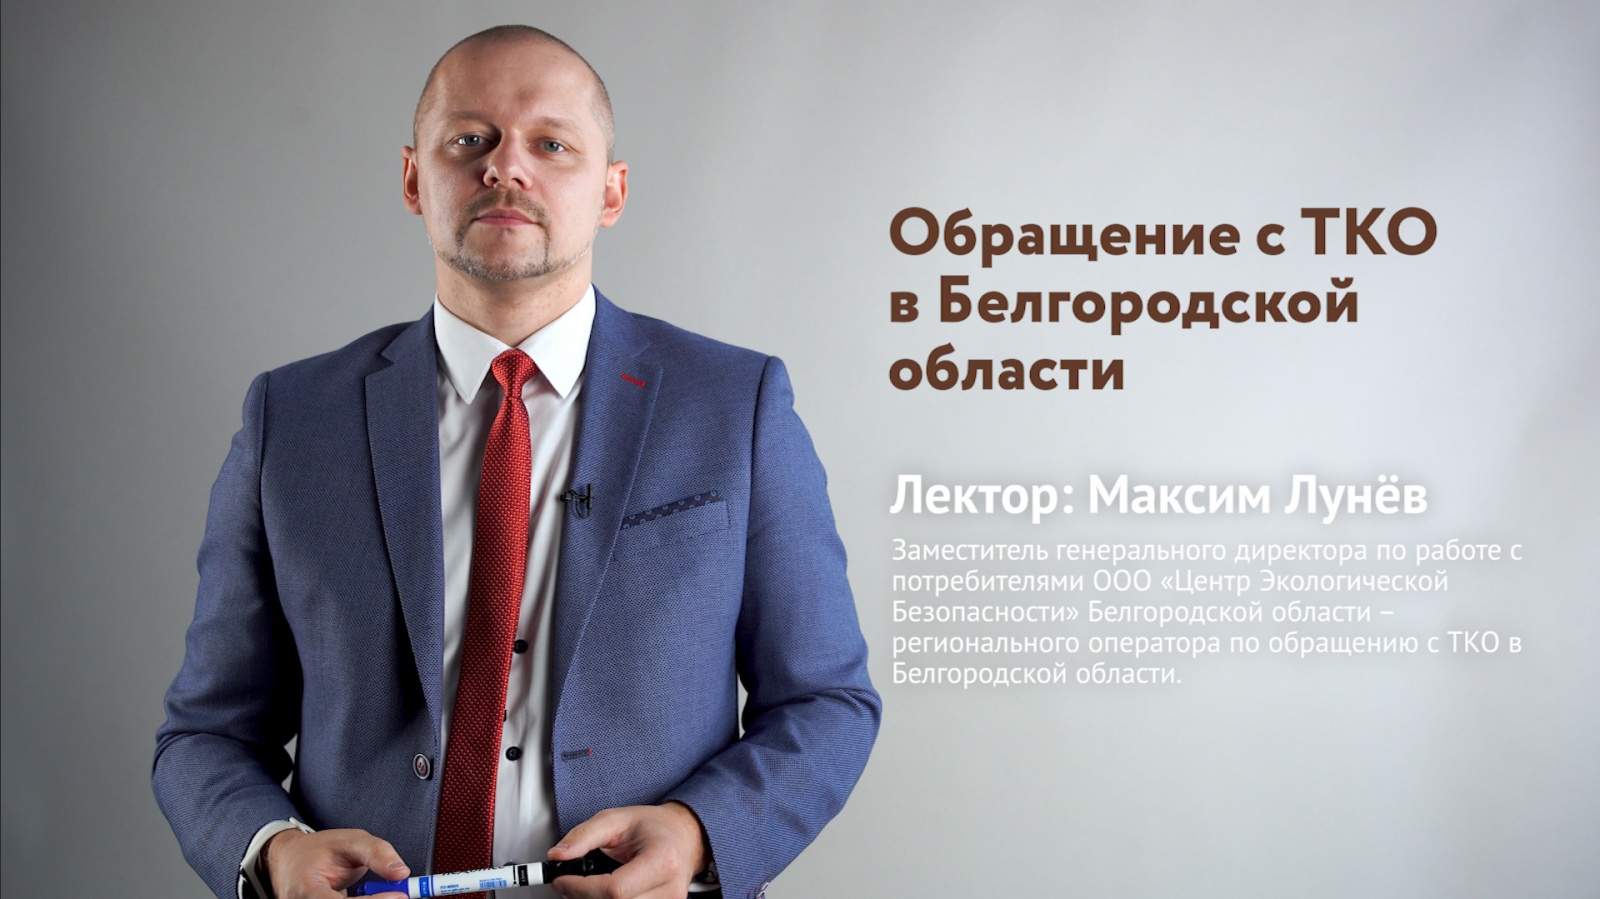 ооо «цэб» осуществляет бесплатное онлайн-обучение для начинающих предпринимателей и собственников бизнеса по вопросам обращения с твердыми коммунальными отходами на территории белгородской области